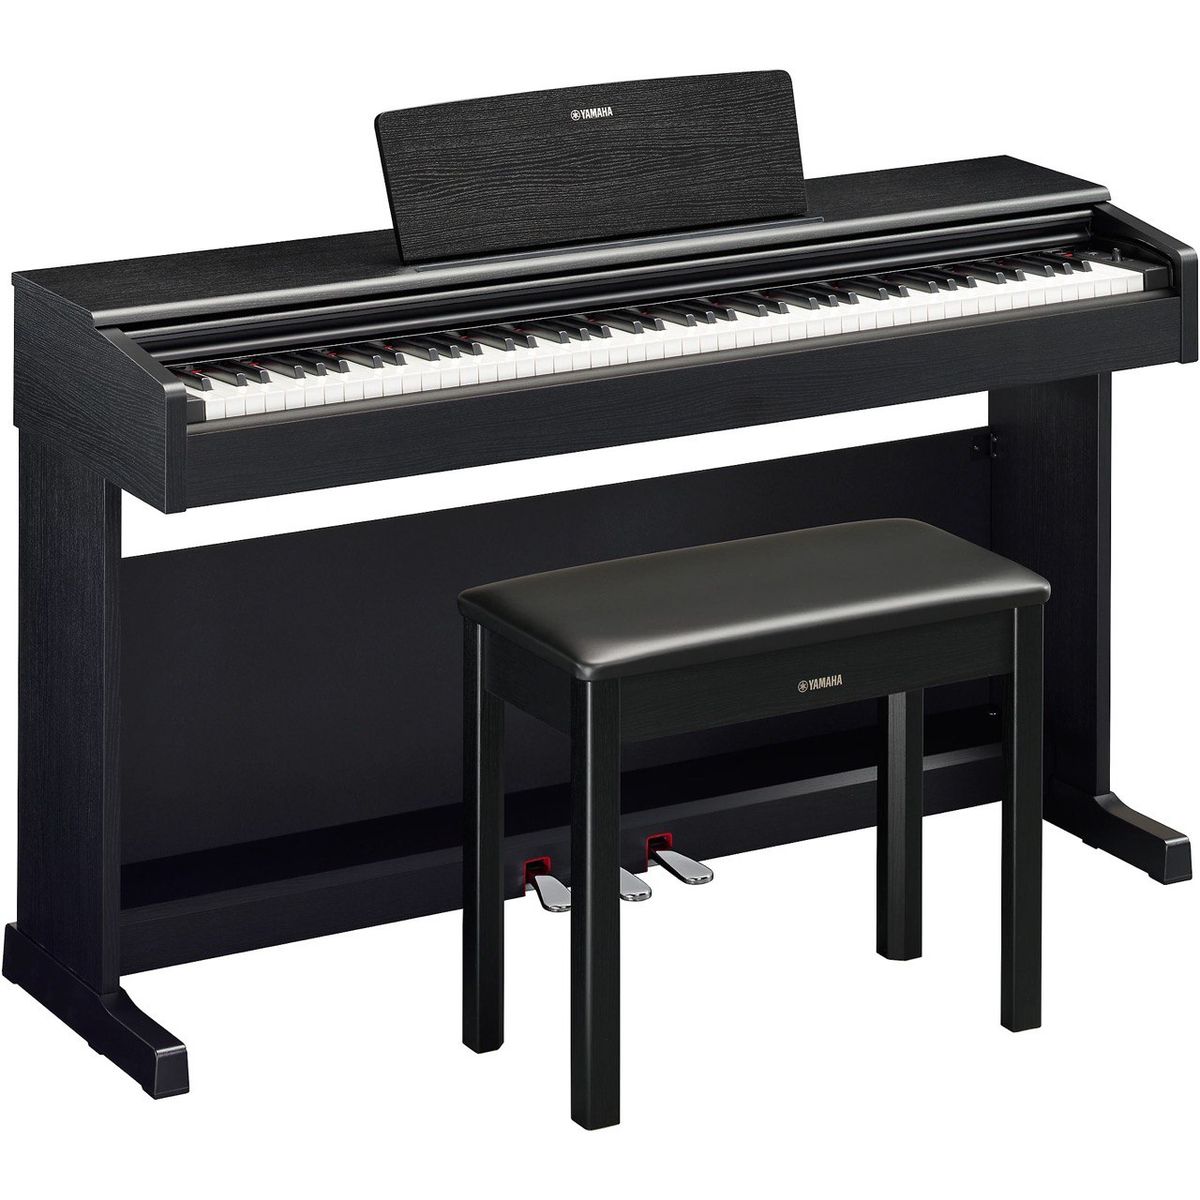 Цифровые пианино Yamaha YDP-145B Arius (банкетка в комплекте) цифровые пианино yamaha ydp 145b arius банкетка в комплекте